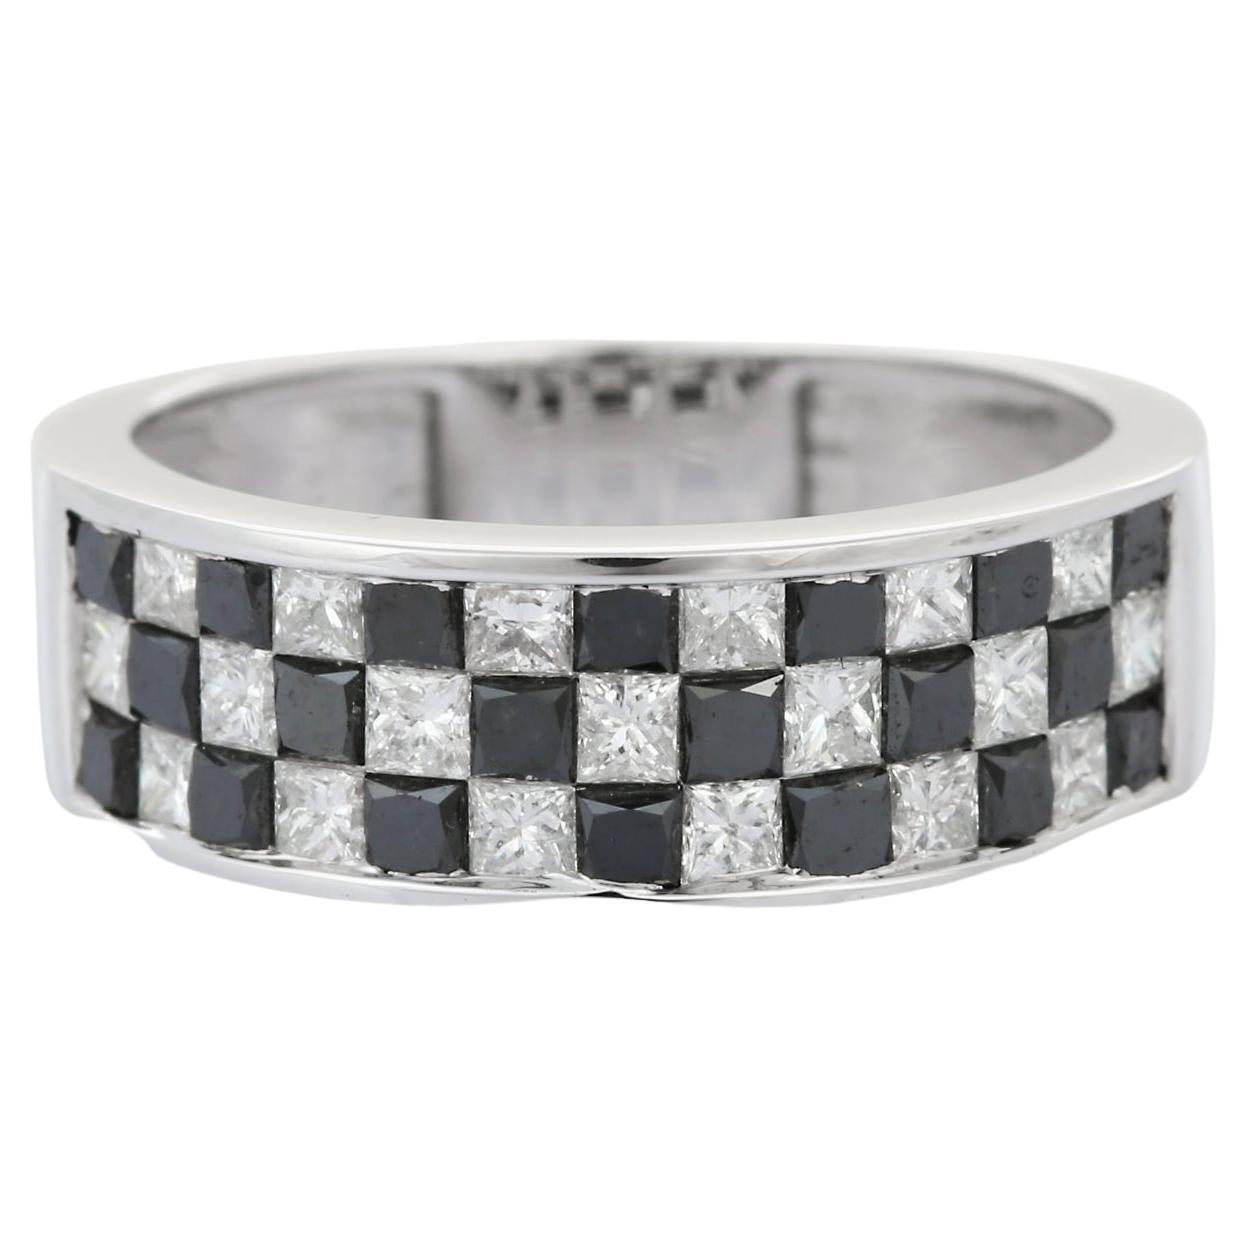 For Sale:  Art Deco Black White Diamond Band Ring in 18 Karat White Gold